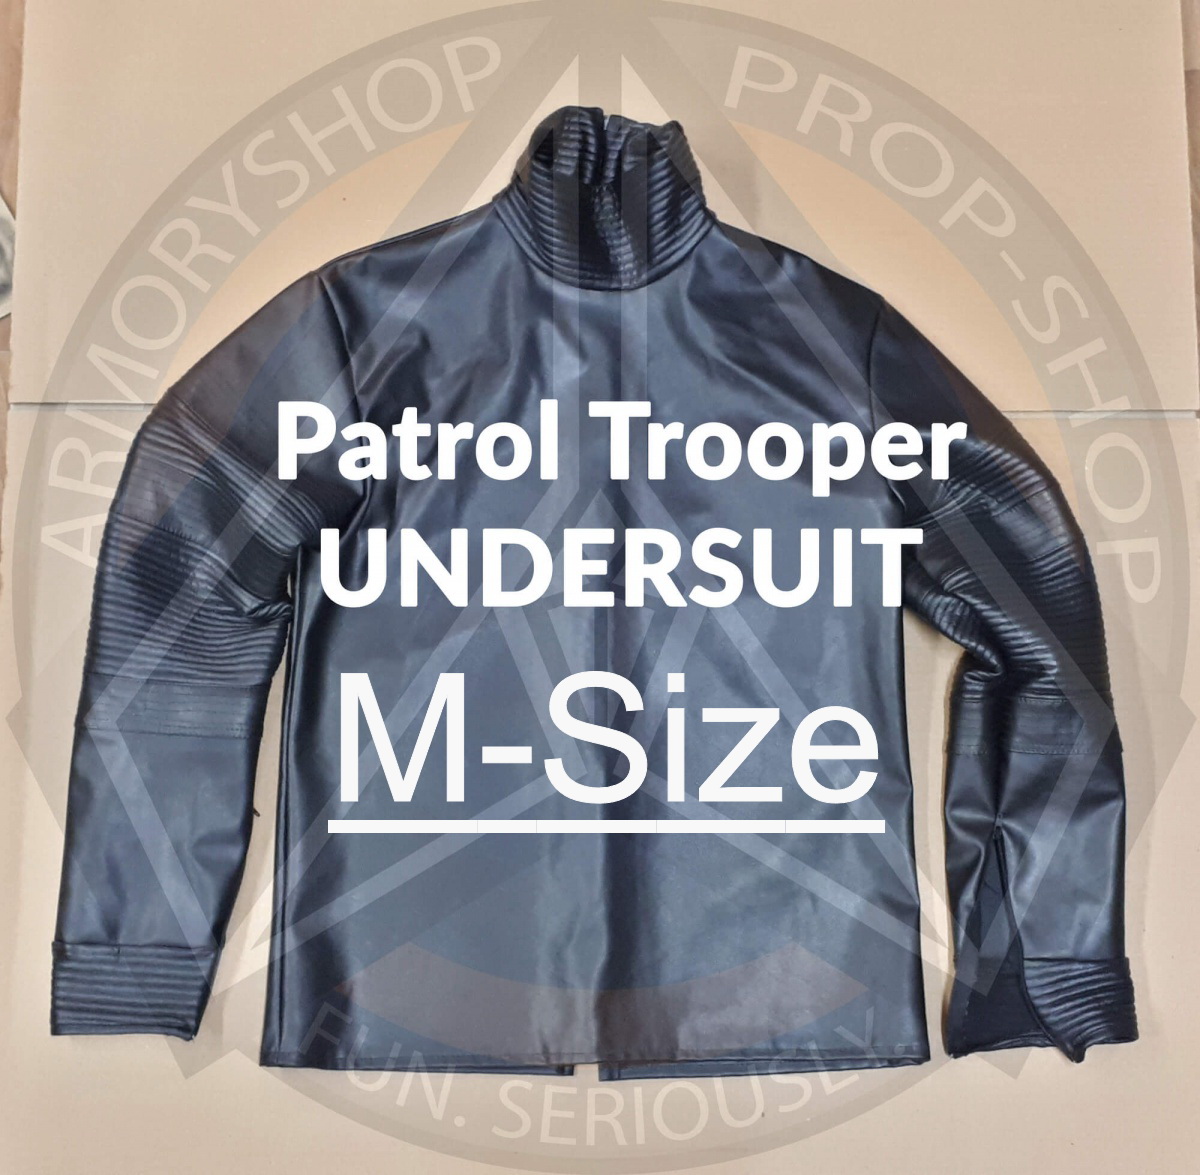 Patrol Trooper Undersuit